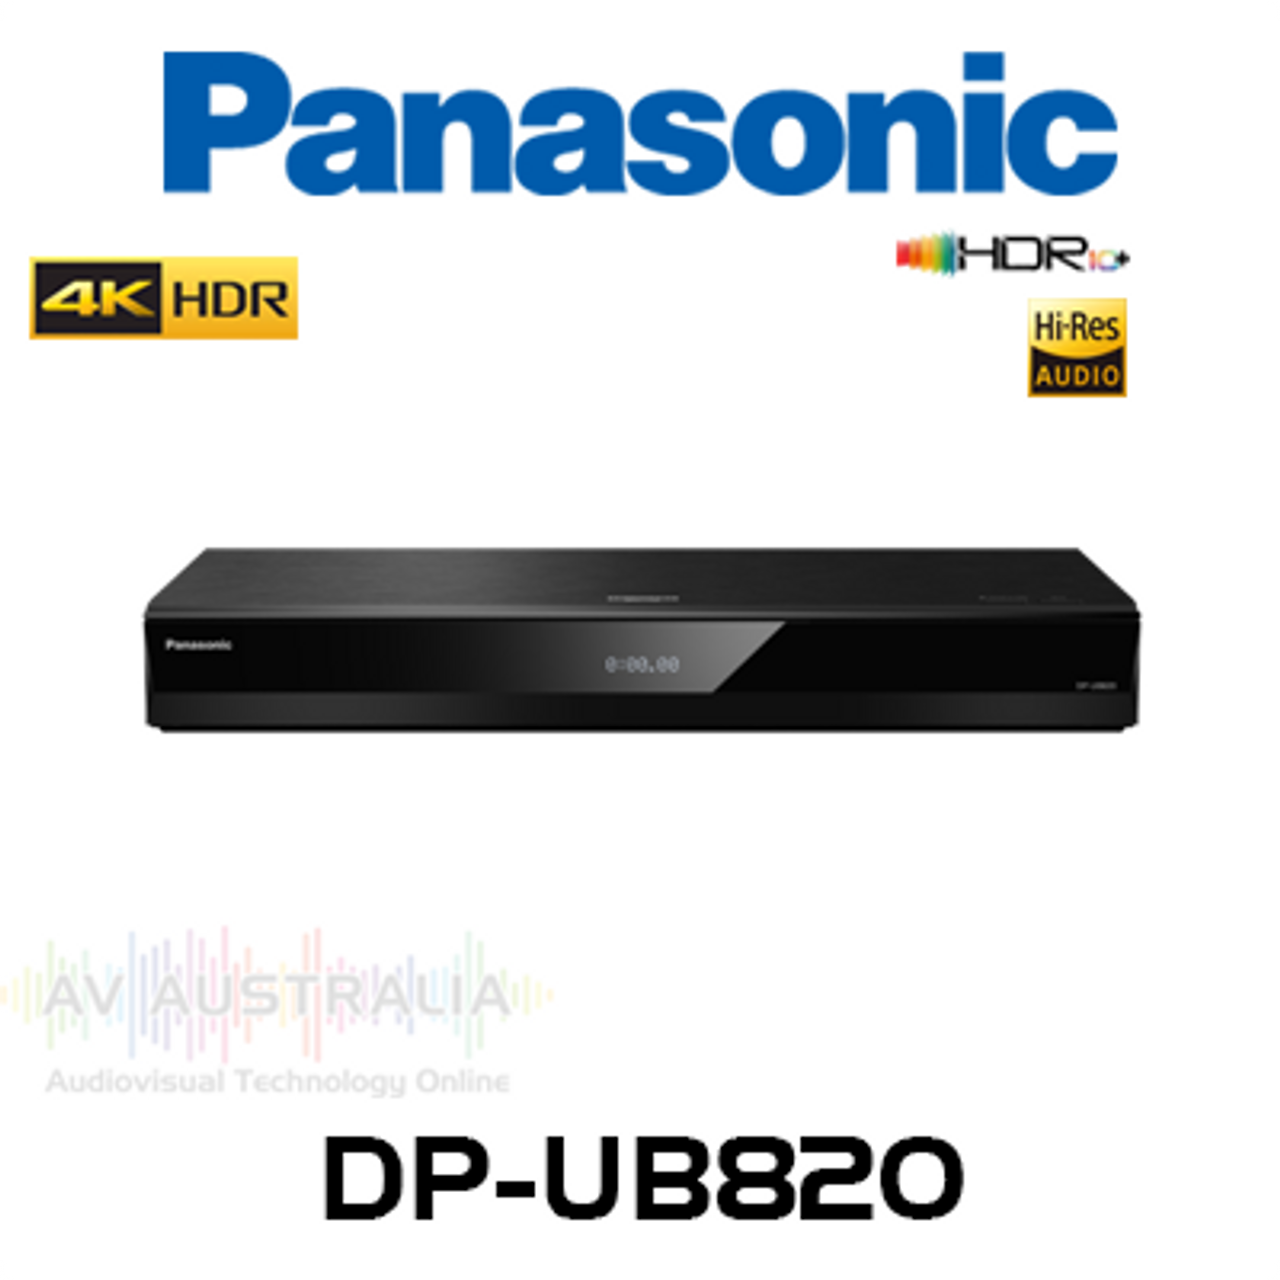 Panasonic DP-UB820 Premium 4K HDR10+ Blu-Ray Player